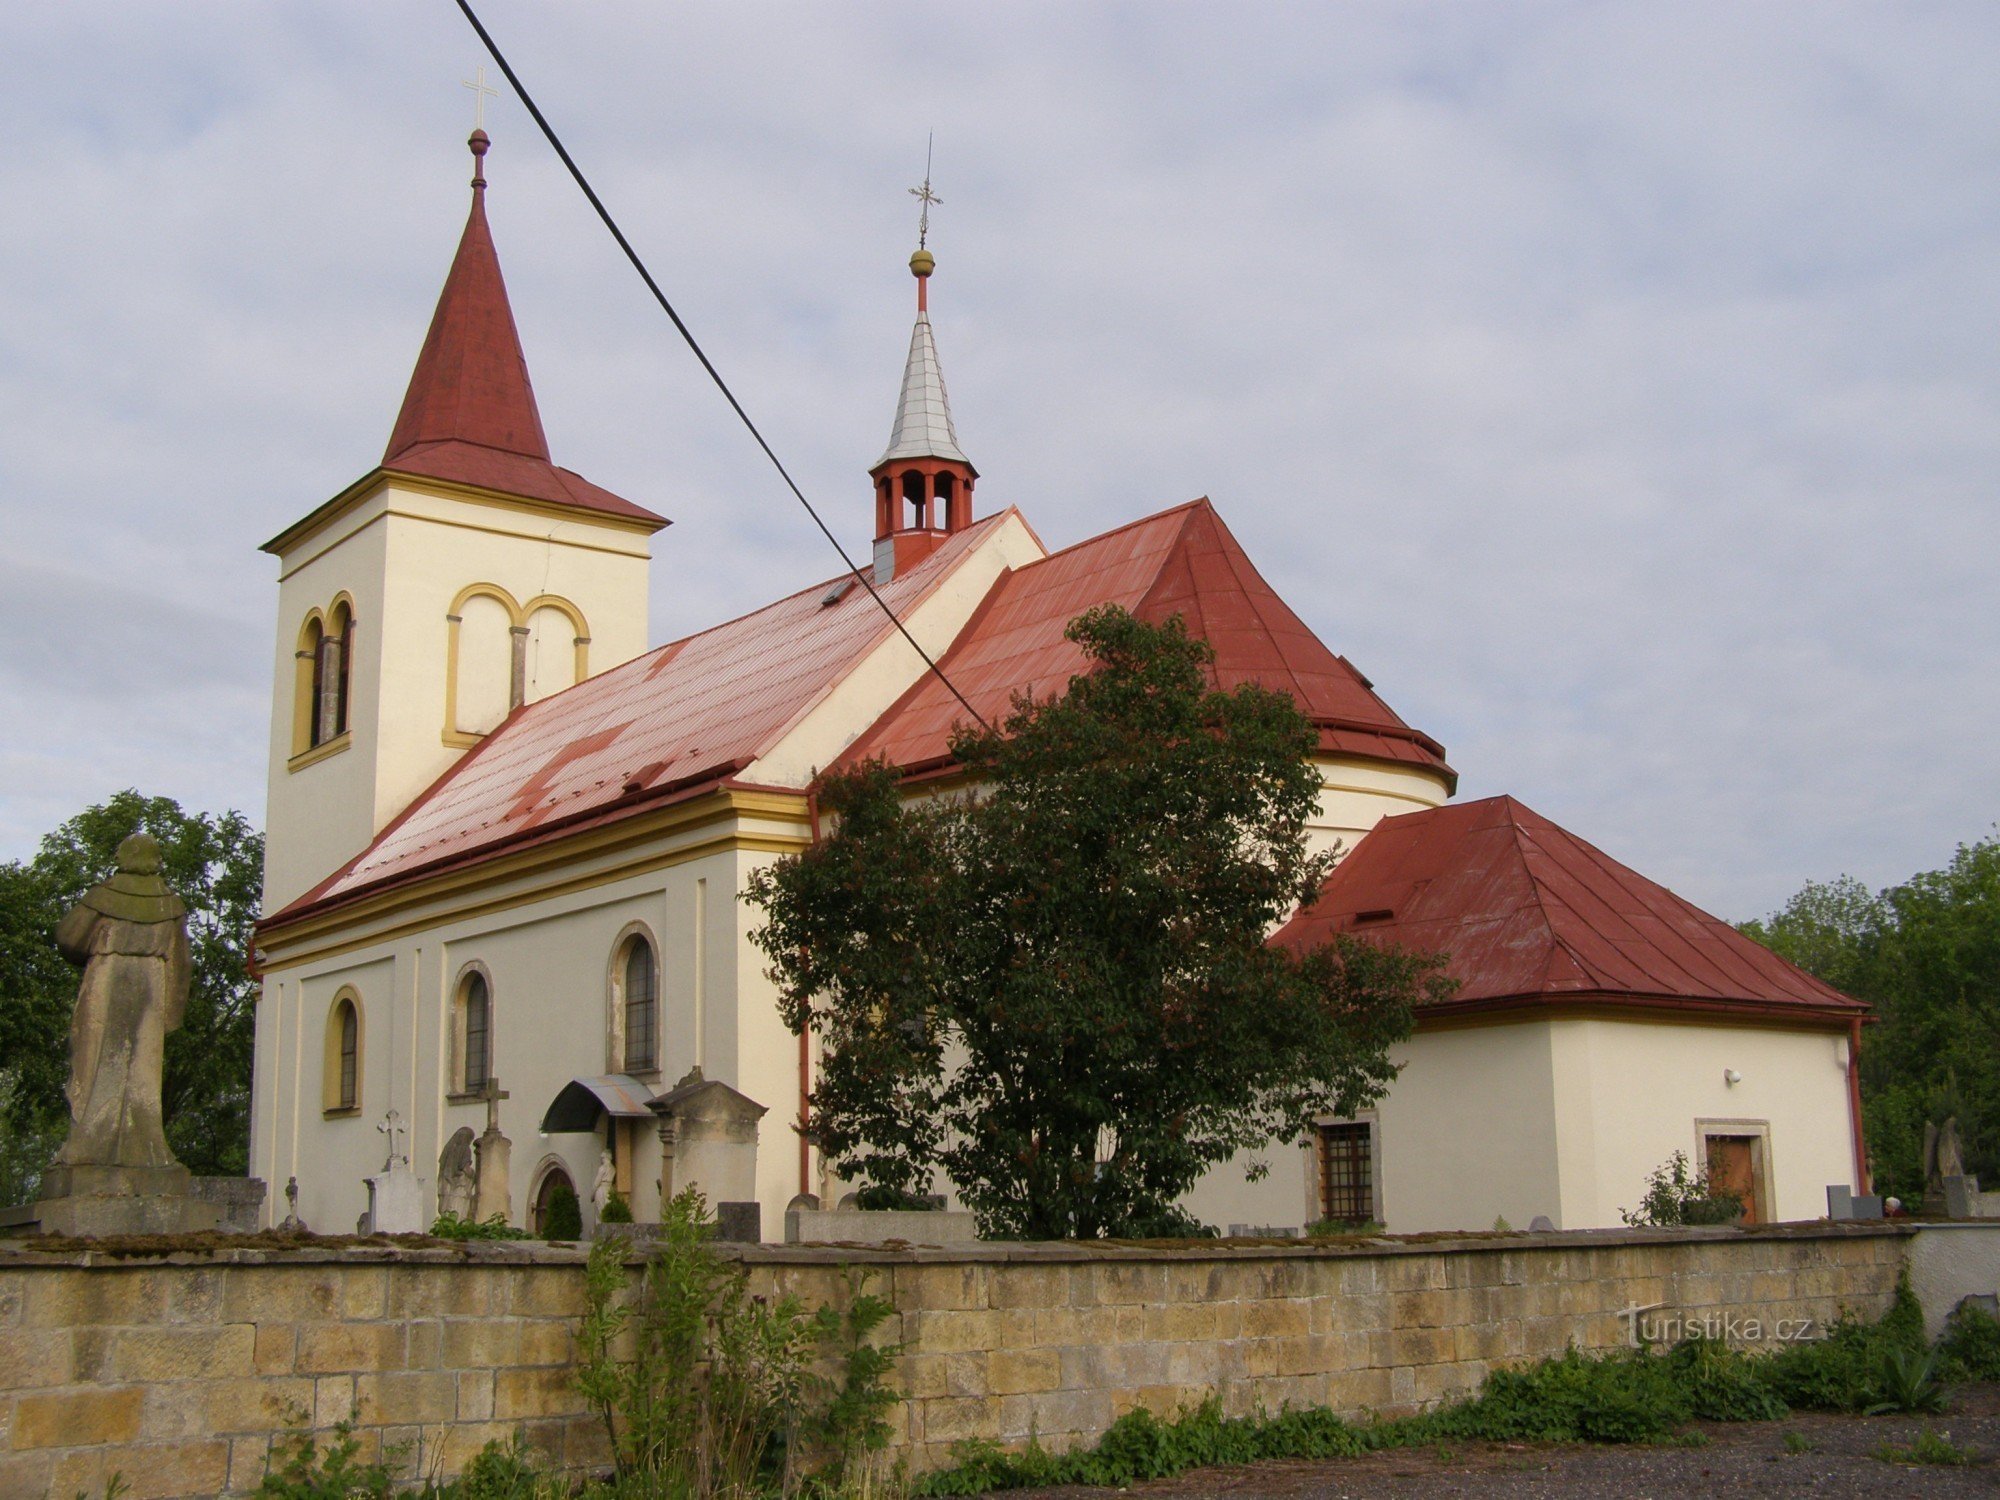 Robousy - Kyrkan för att hitta St. Kris